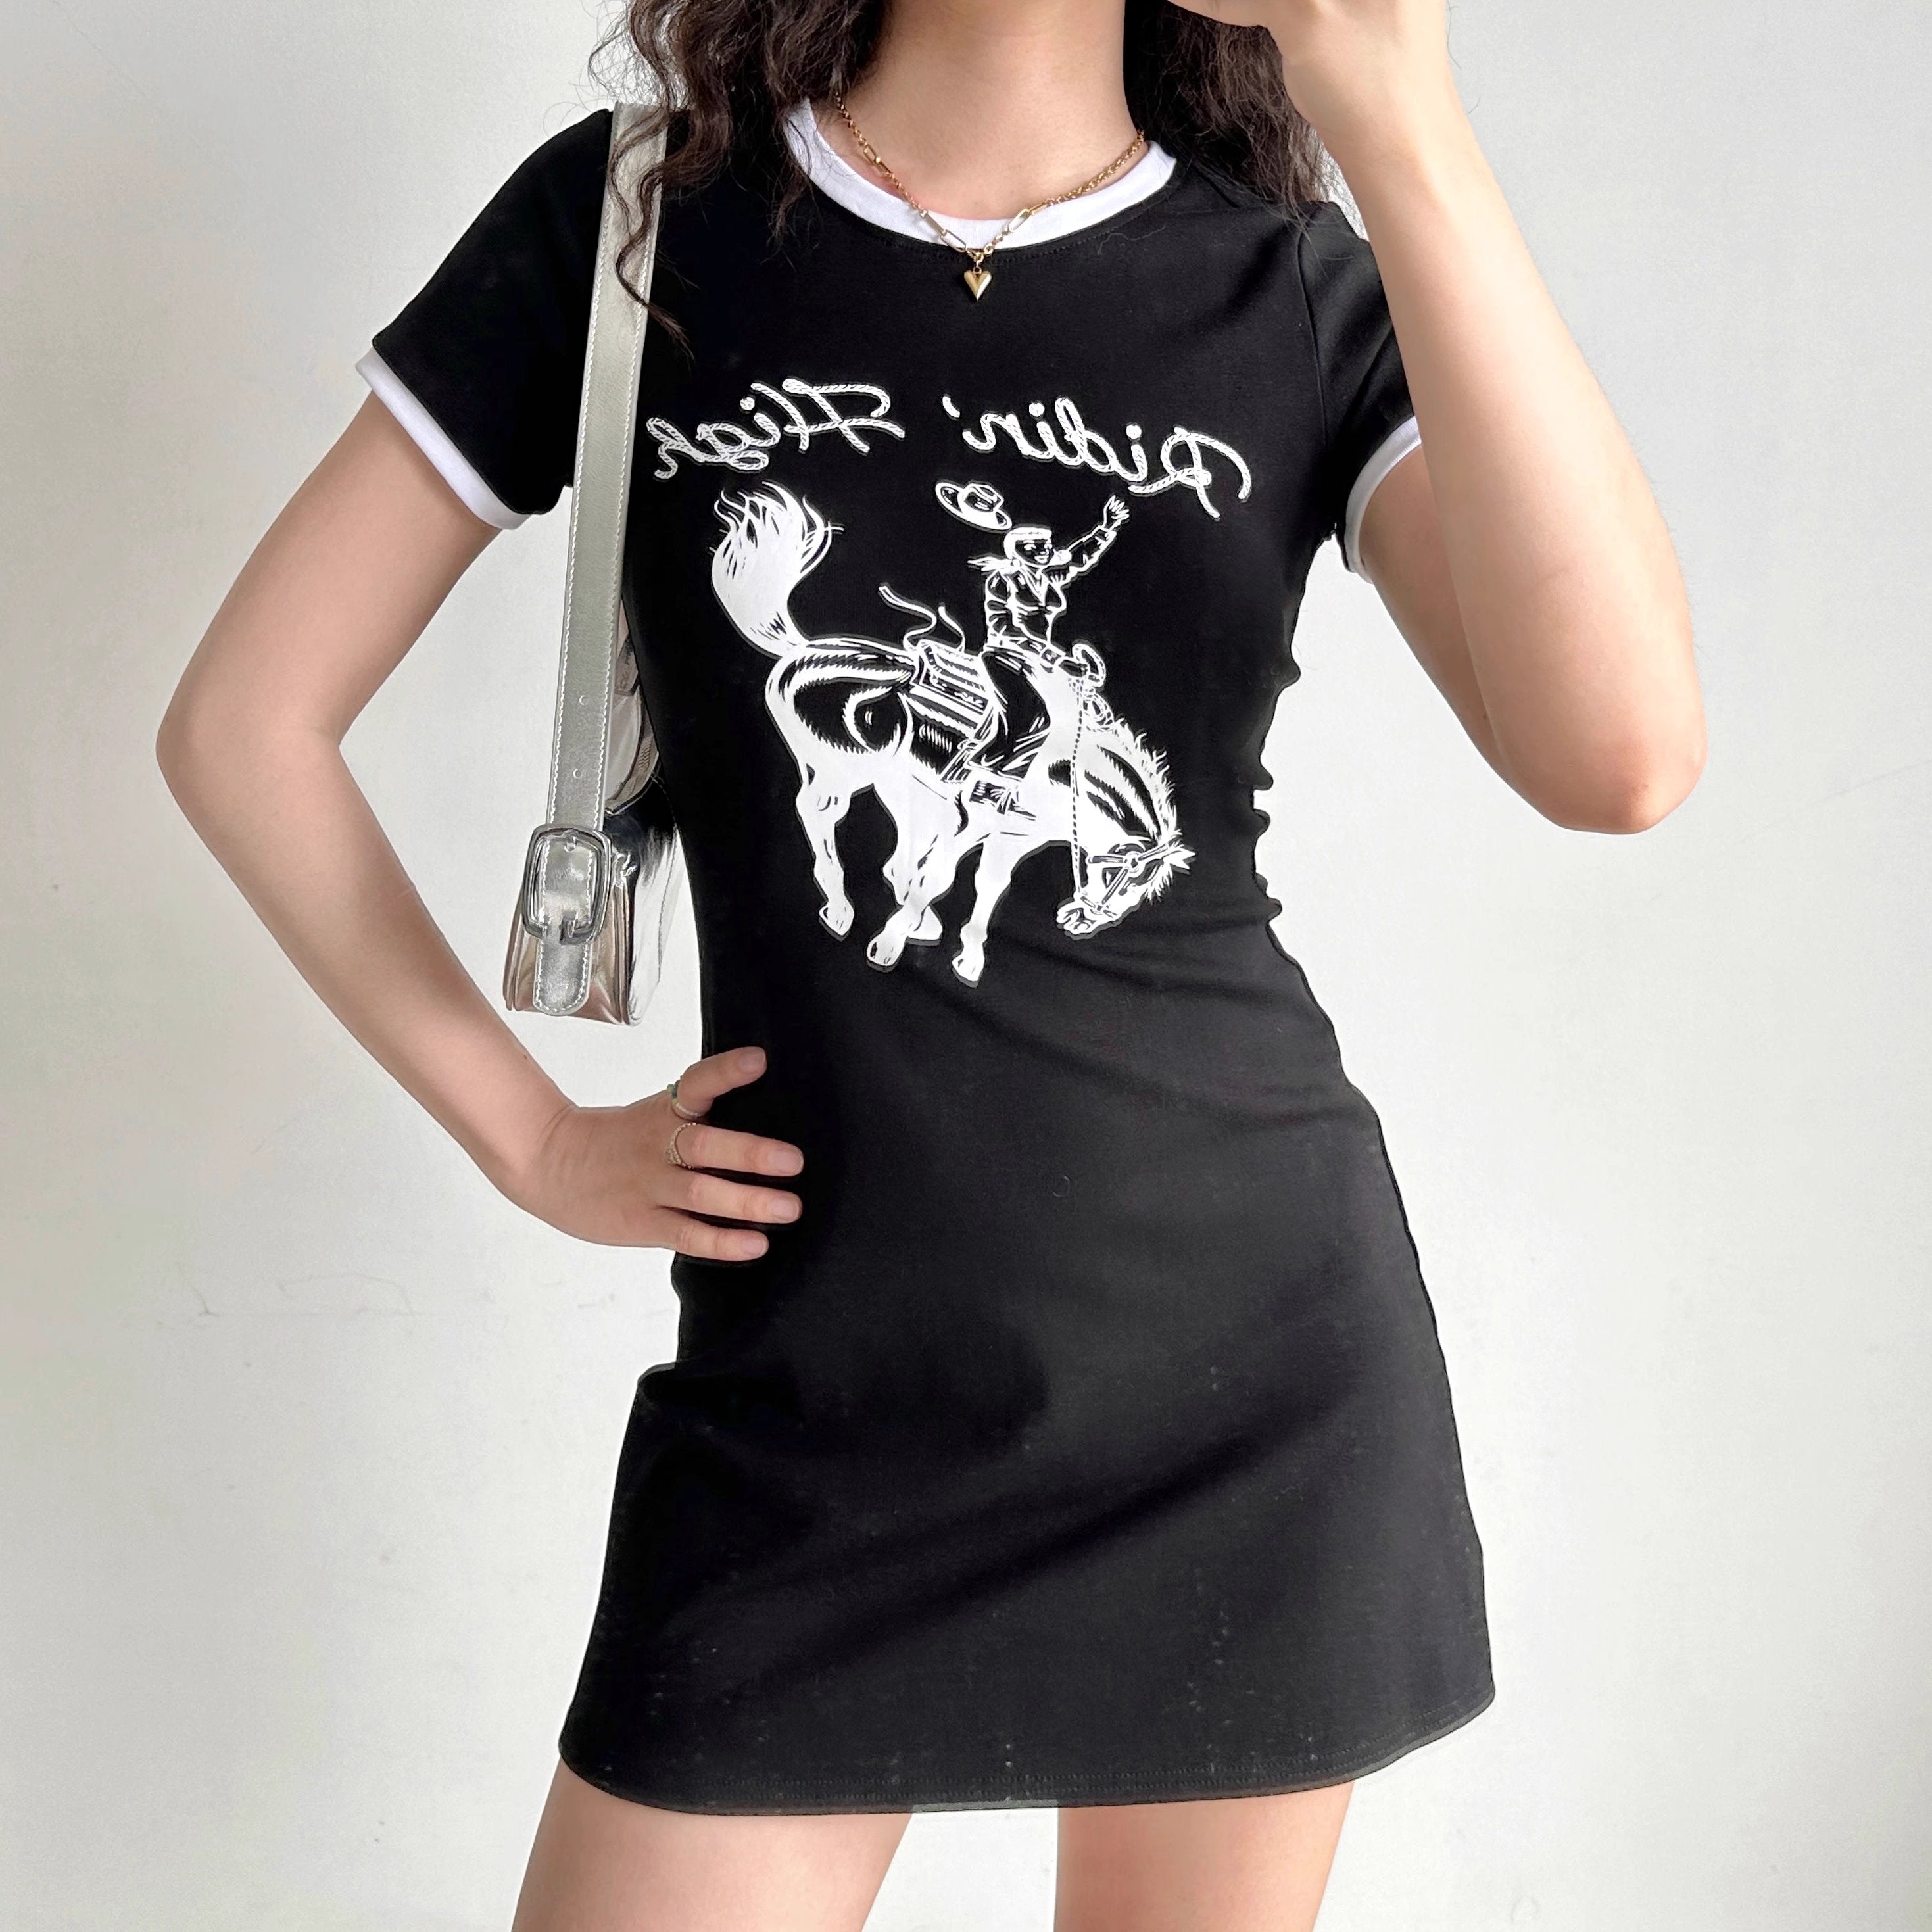 Chicdear - Ridin' High T-Shirt Dress ~ HANDMADE